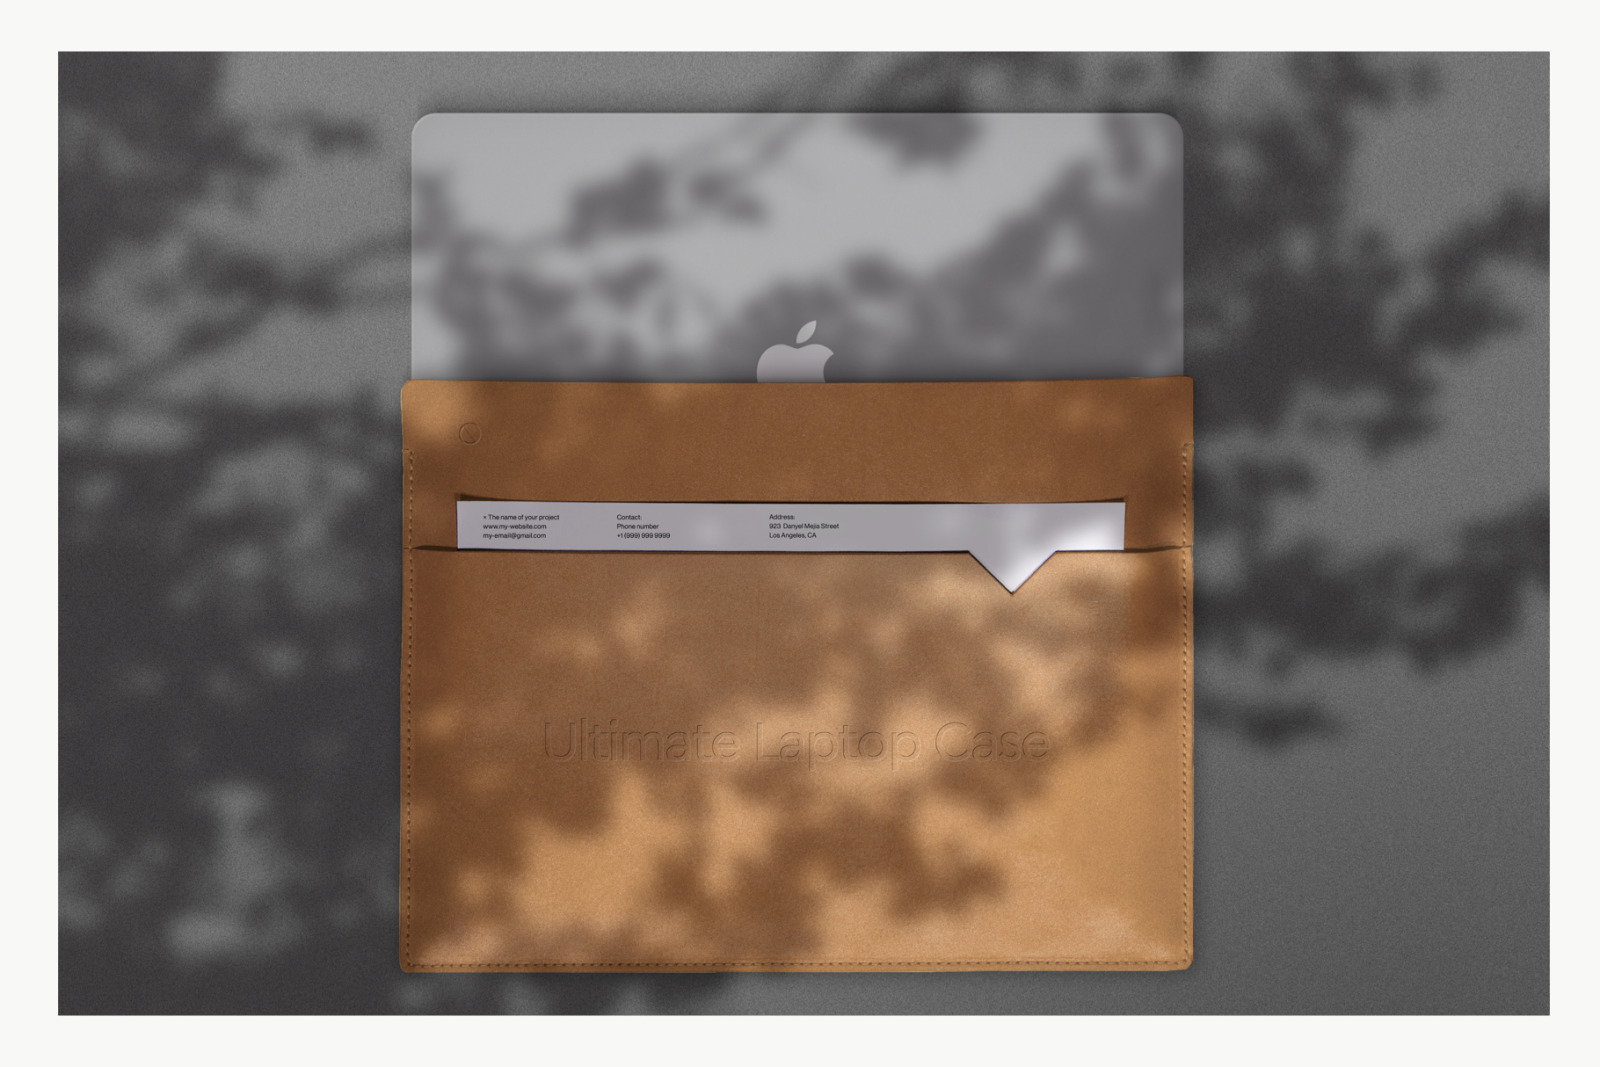 高品质自然光影苹果超薄笔记本皮套品牌设计提案样机模板 Bra